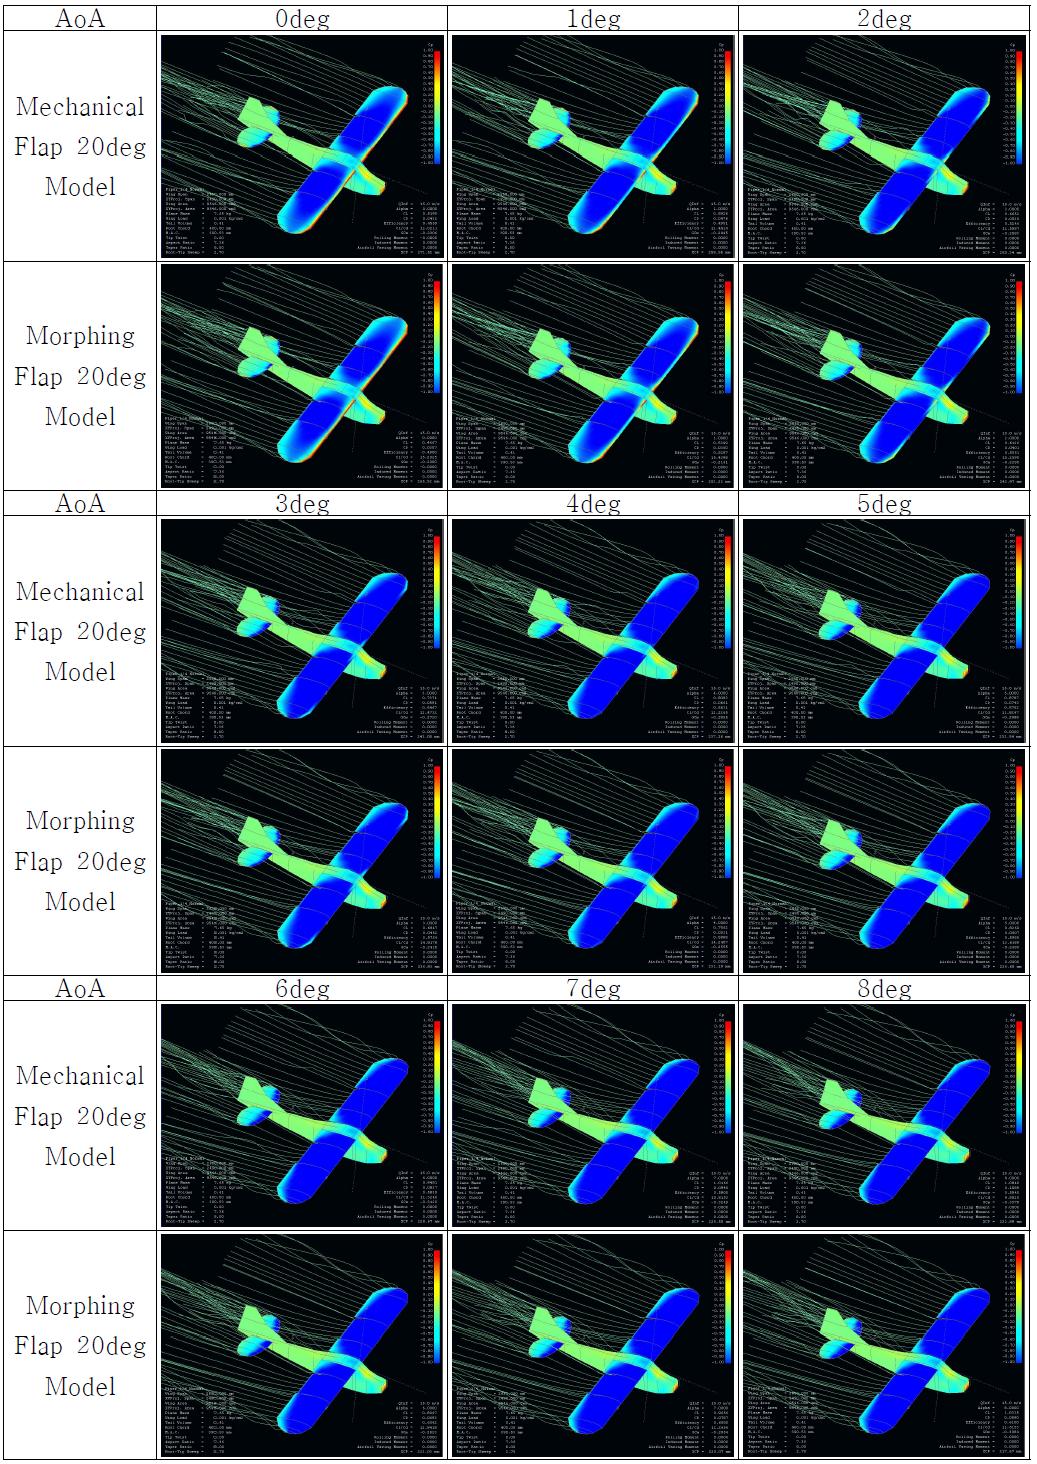 Full Model Simulation (Cp) : Mechanical Flap 20deg vs. Morphing Flap 20deg